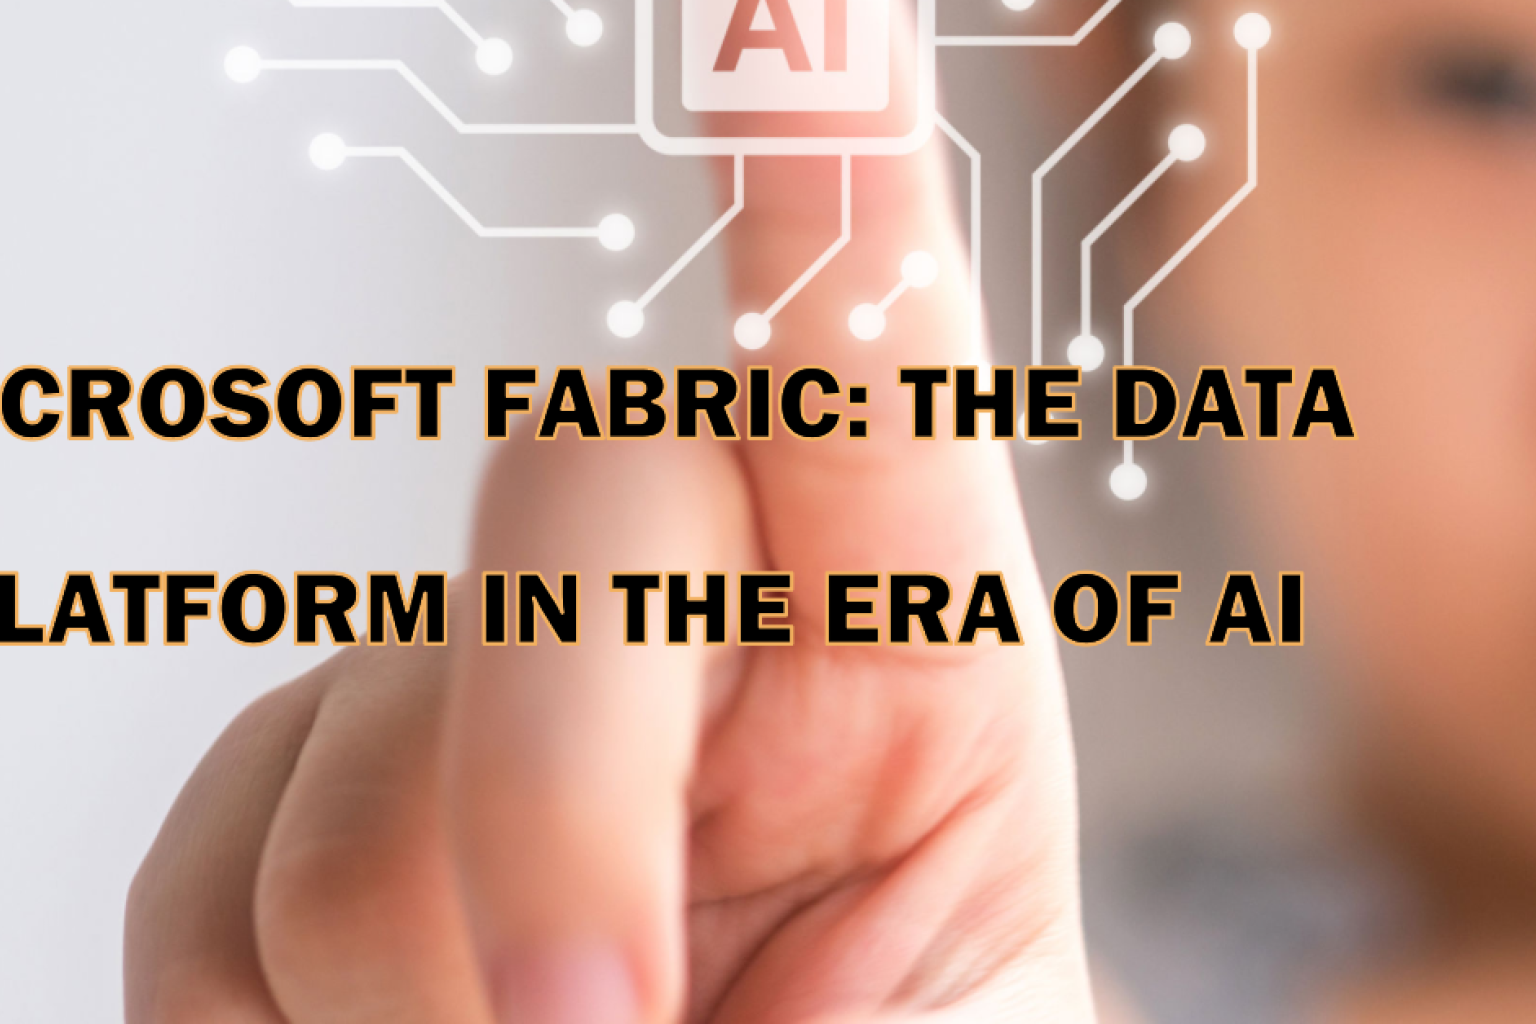 인공지능 기반의 통합 플랫폼인 Microsoft Fabric으로 기업의 데이터 분석 능력을 향상하세요. 데이터 이동, 엔지니어링 및 통합을 지원하는 Microsoft Fabric을 지금 확인하세요!